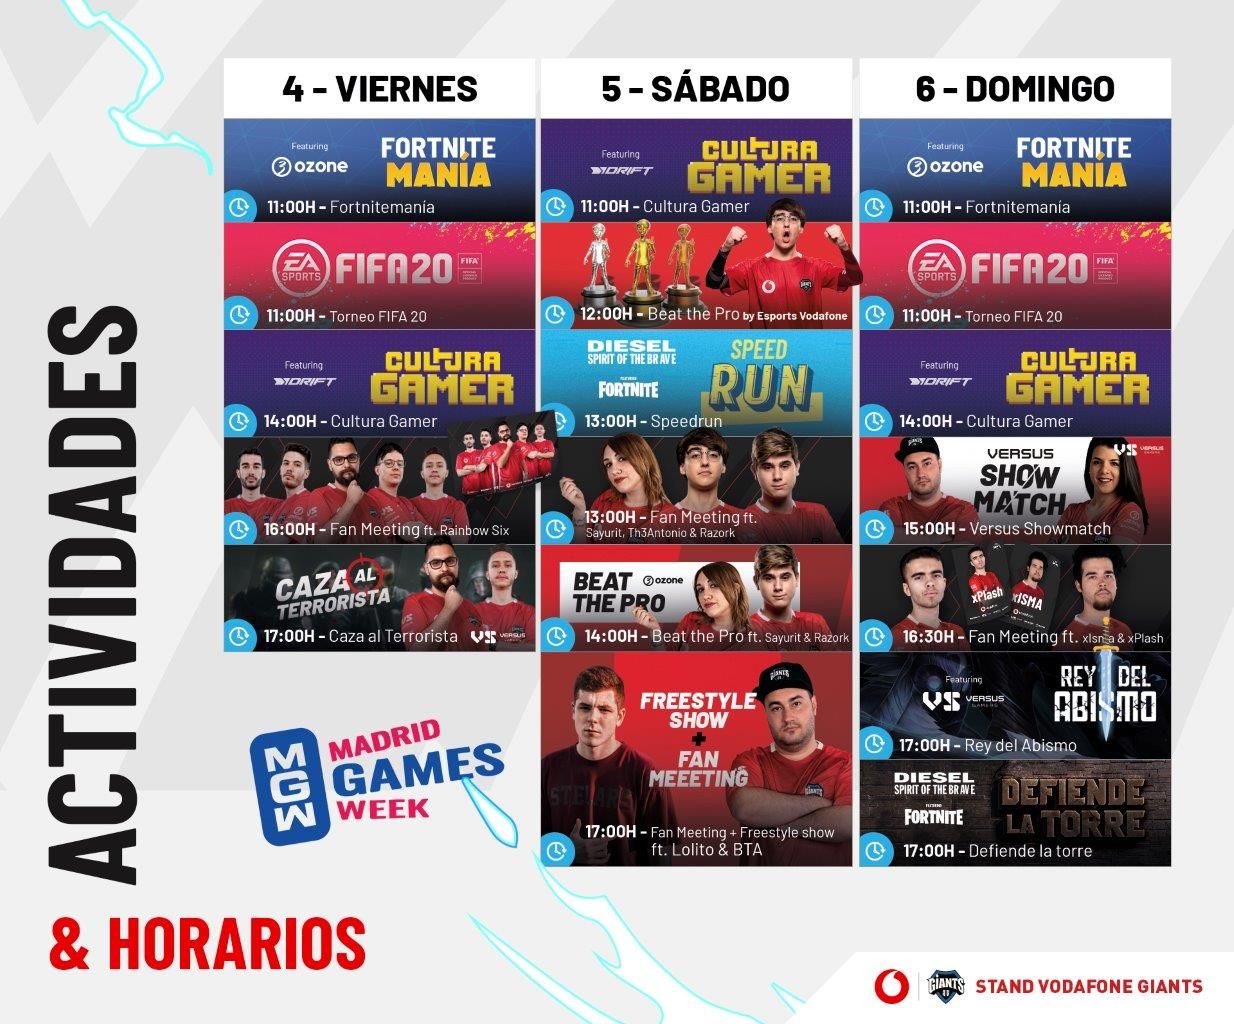 Vodafone Giants desvela su programa para la Madrid Games Week